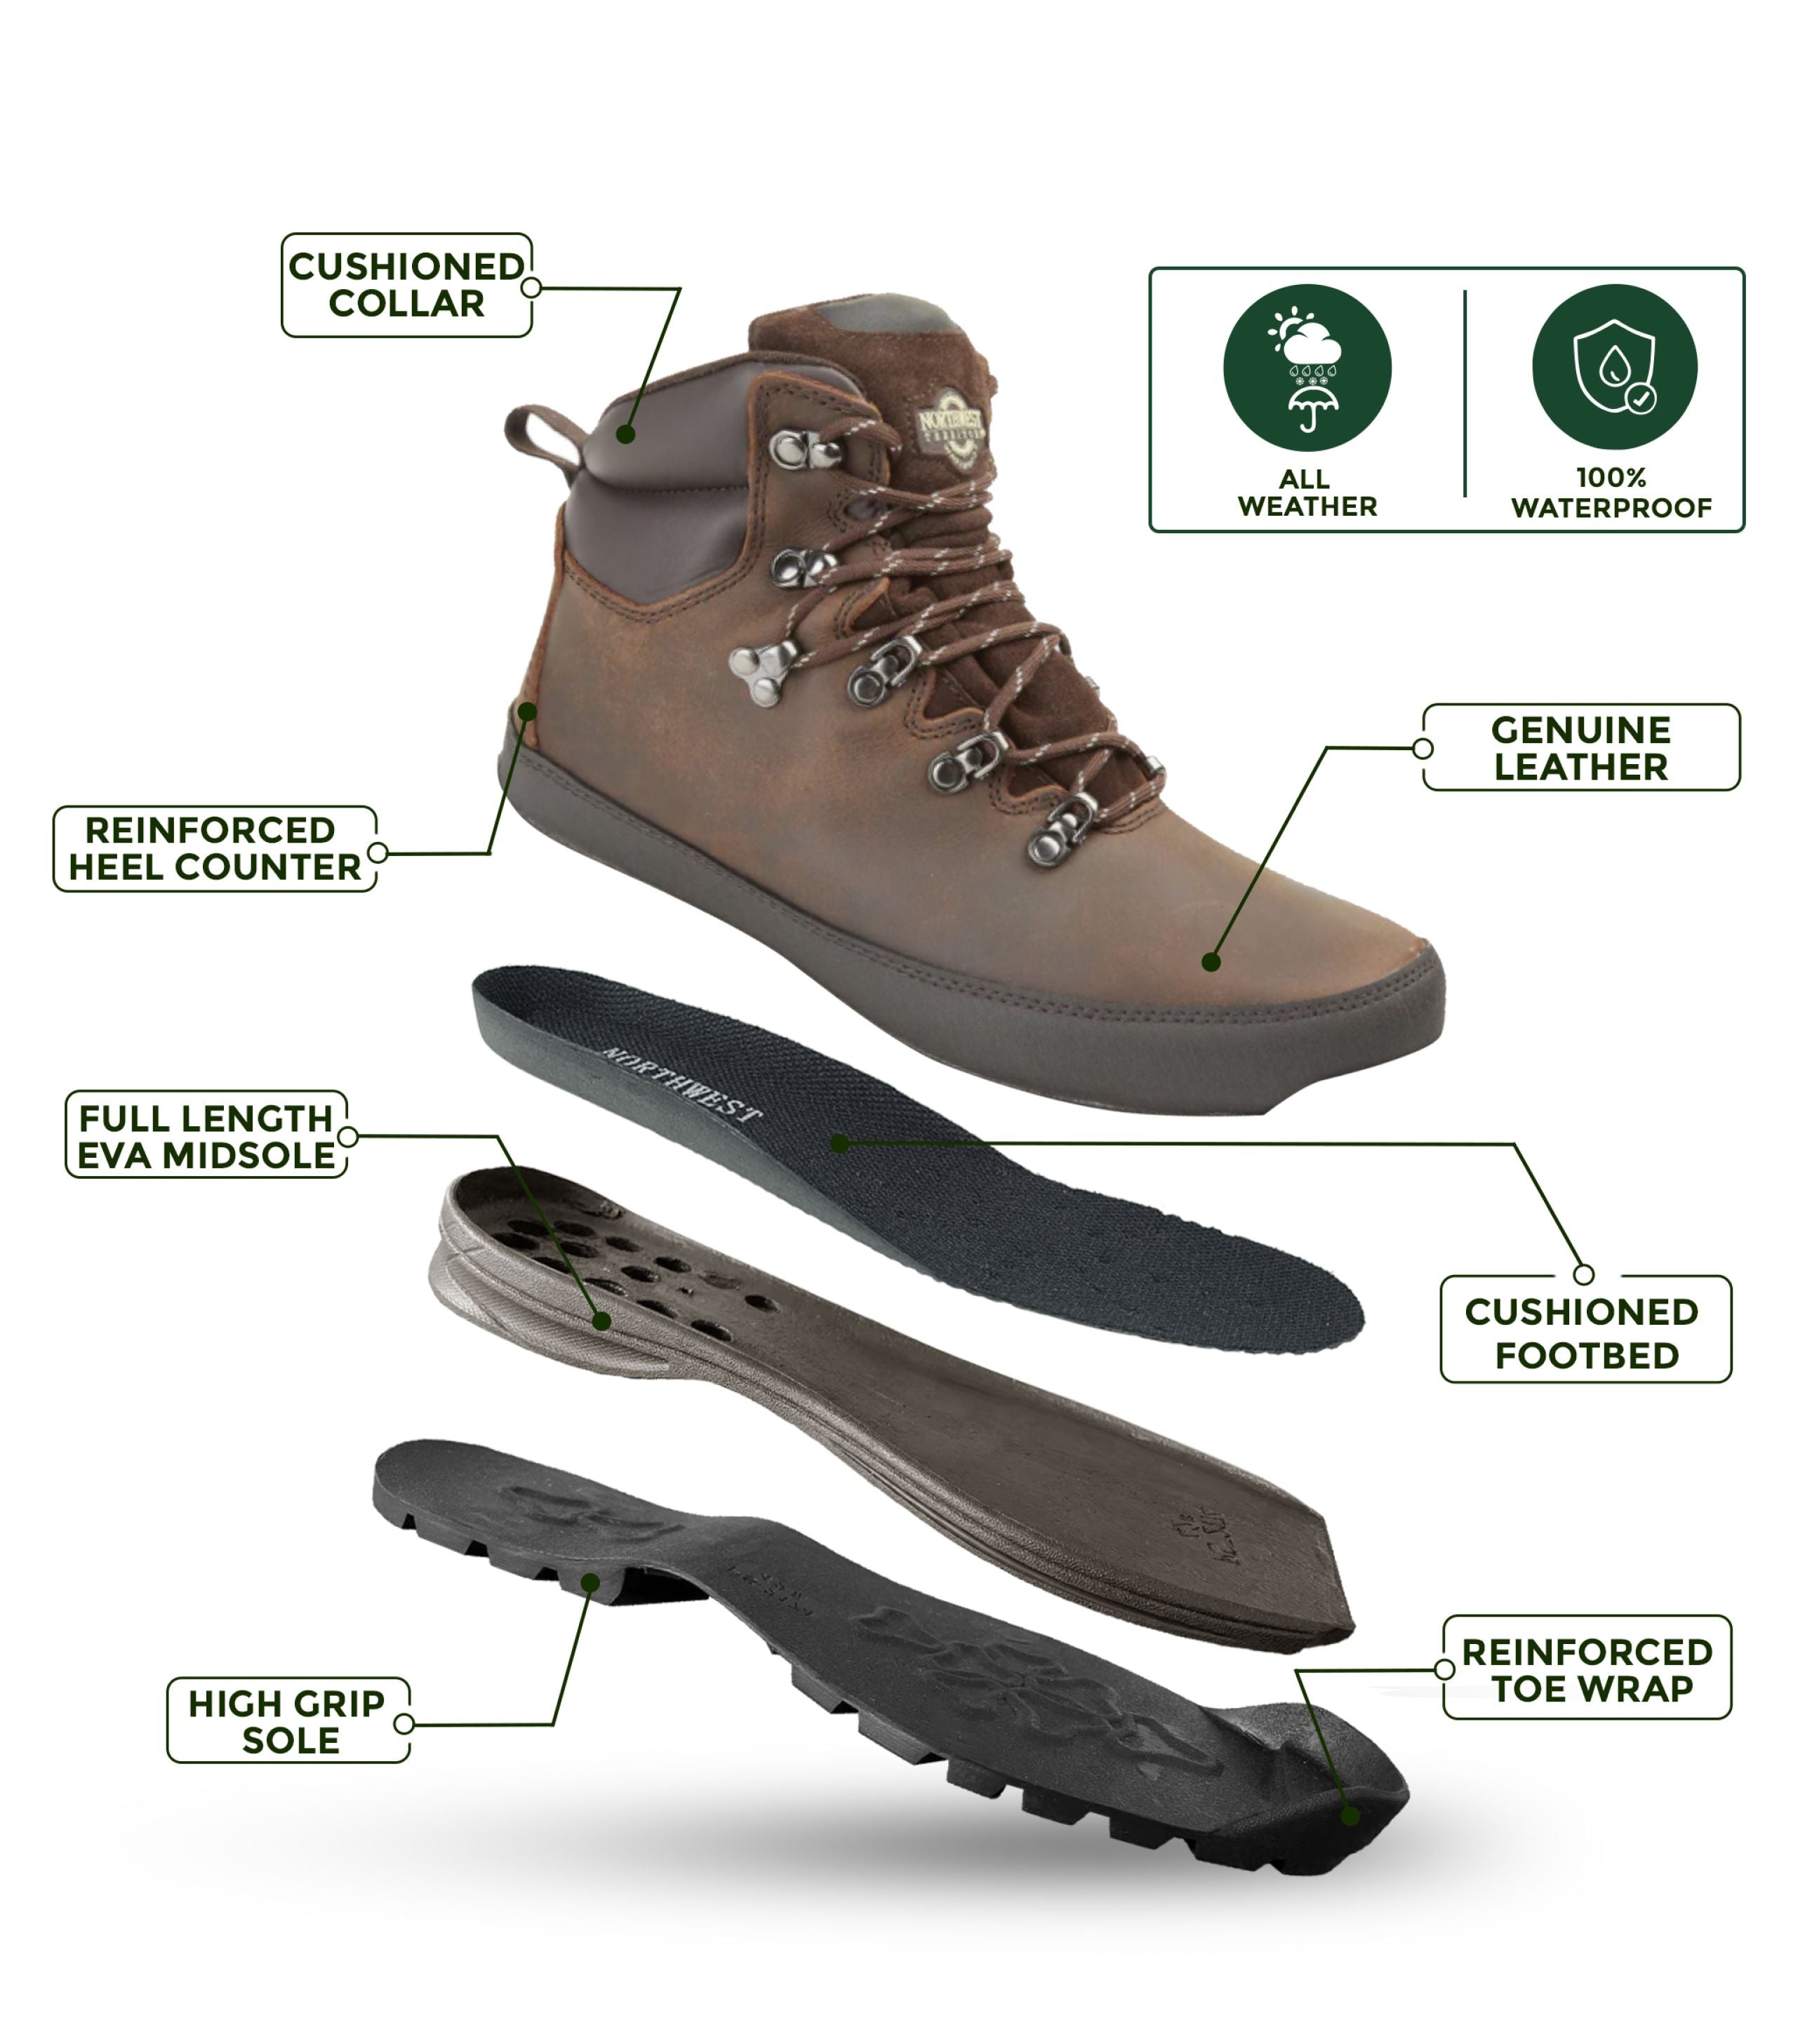 Men's Leather Waterproof Walking Boots